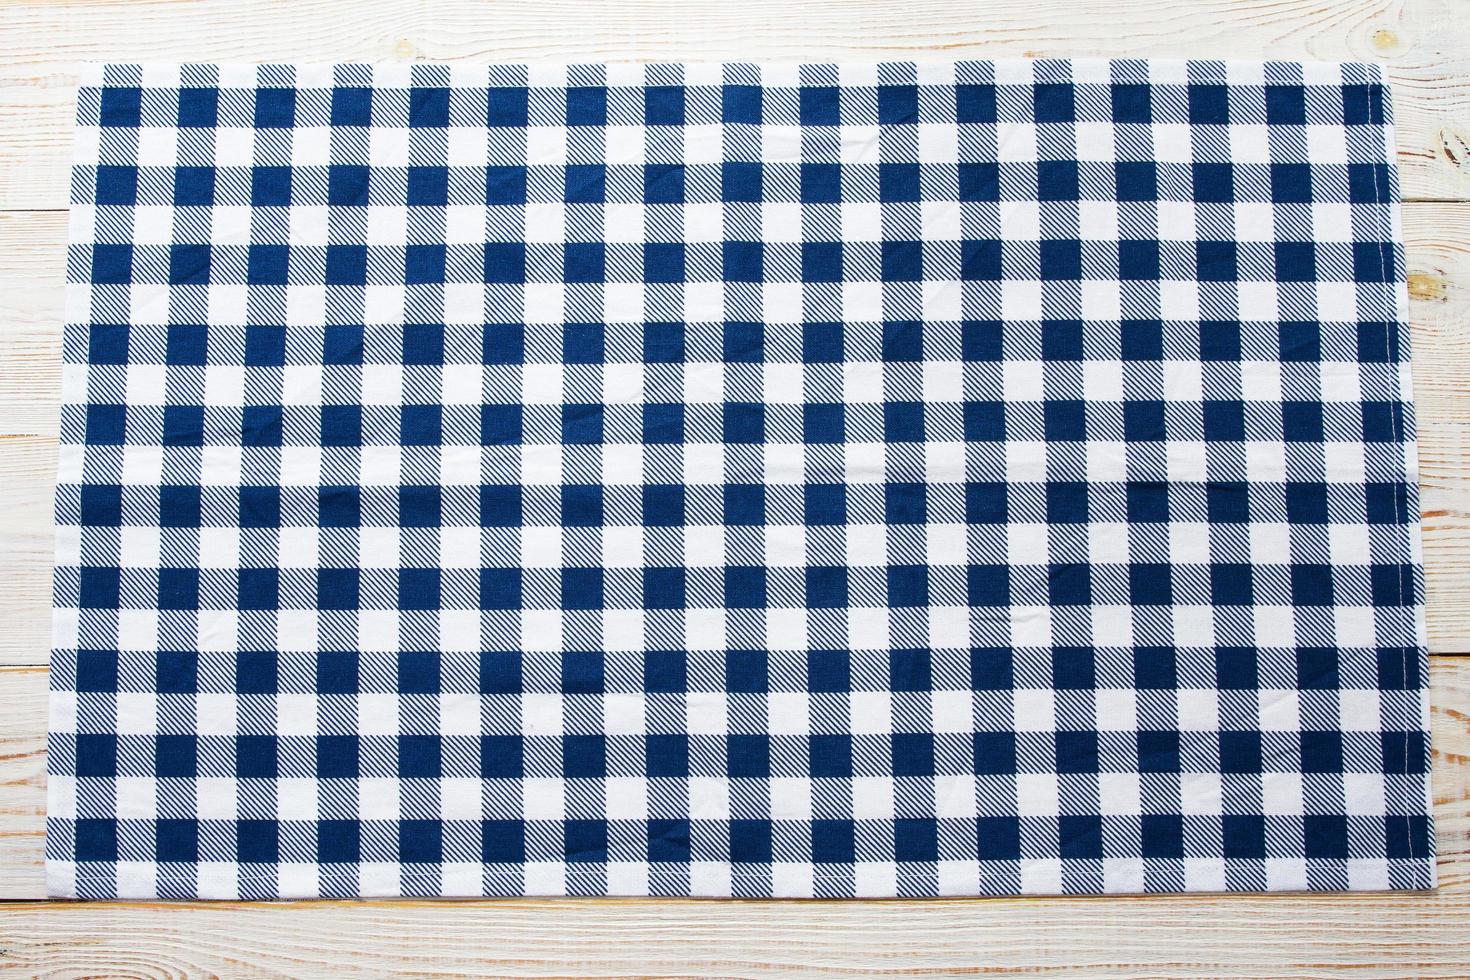 blau karierte tischdecke auf tischplatteansicht foto